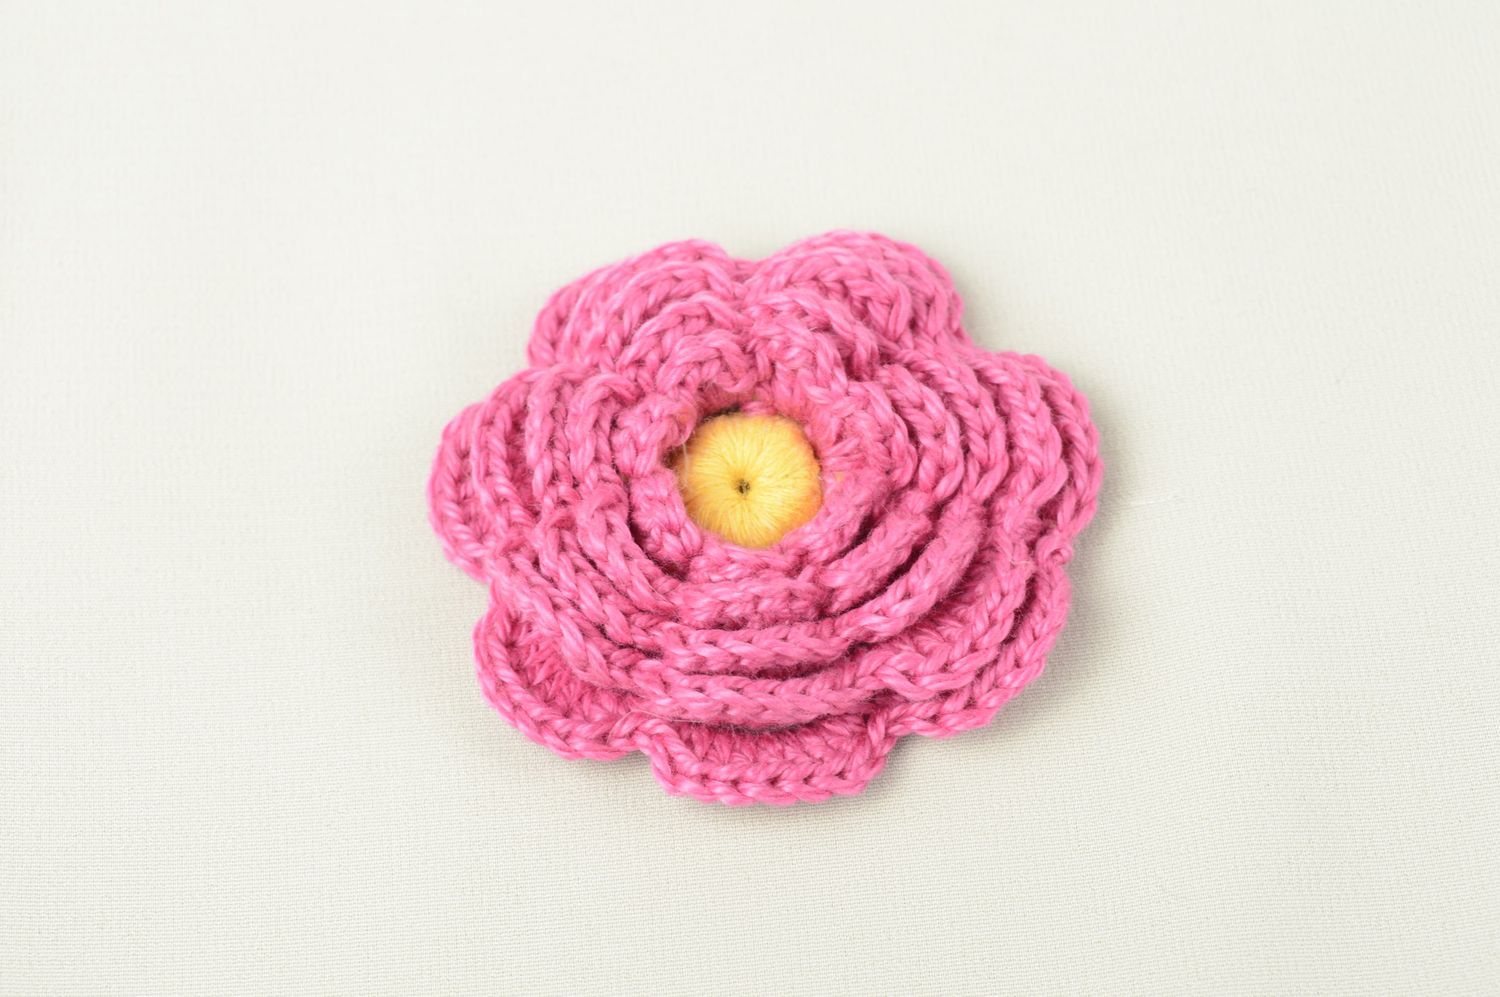 Unusual handmade crochet flower jewelry making supplies artisan jewelry photo 1